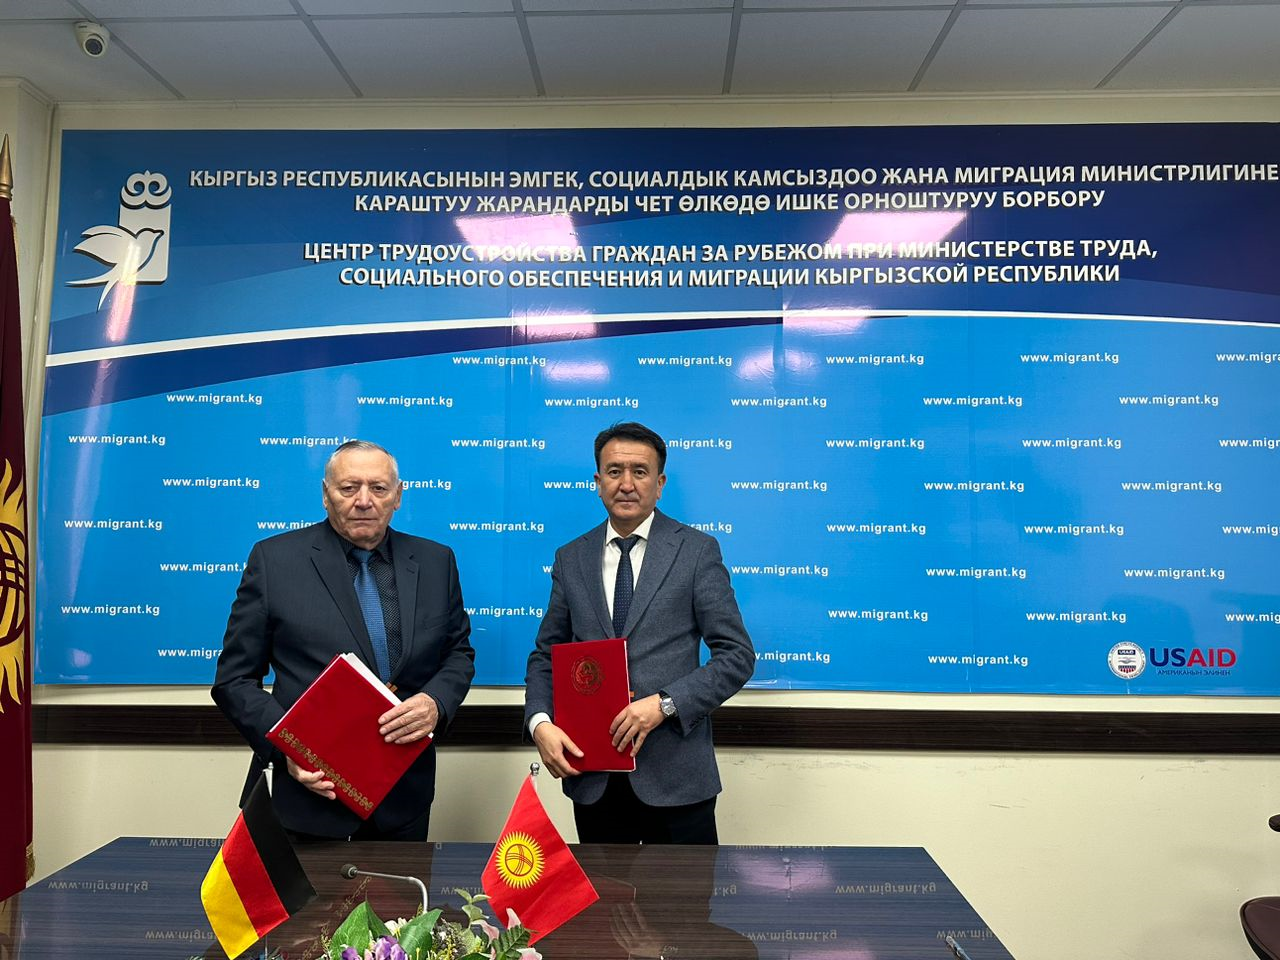 Новые возможности для граждан Кыргызстана: Германия предлагает работу и обучение в области инженерии